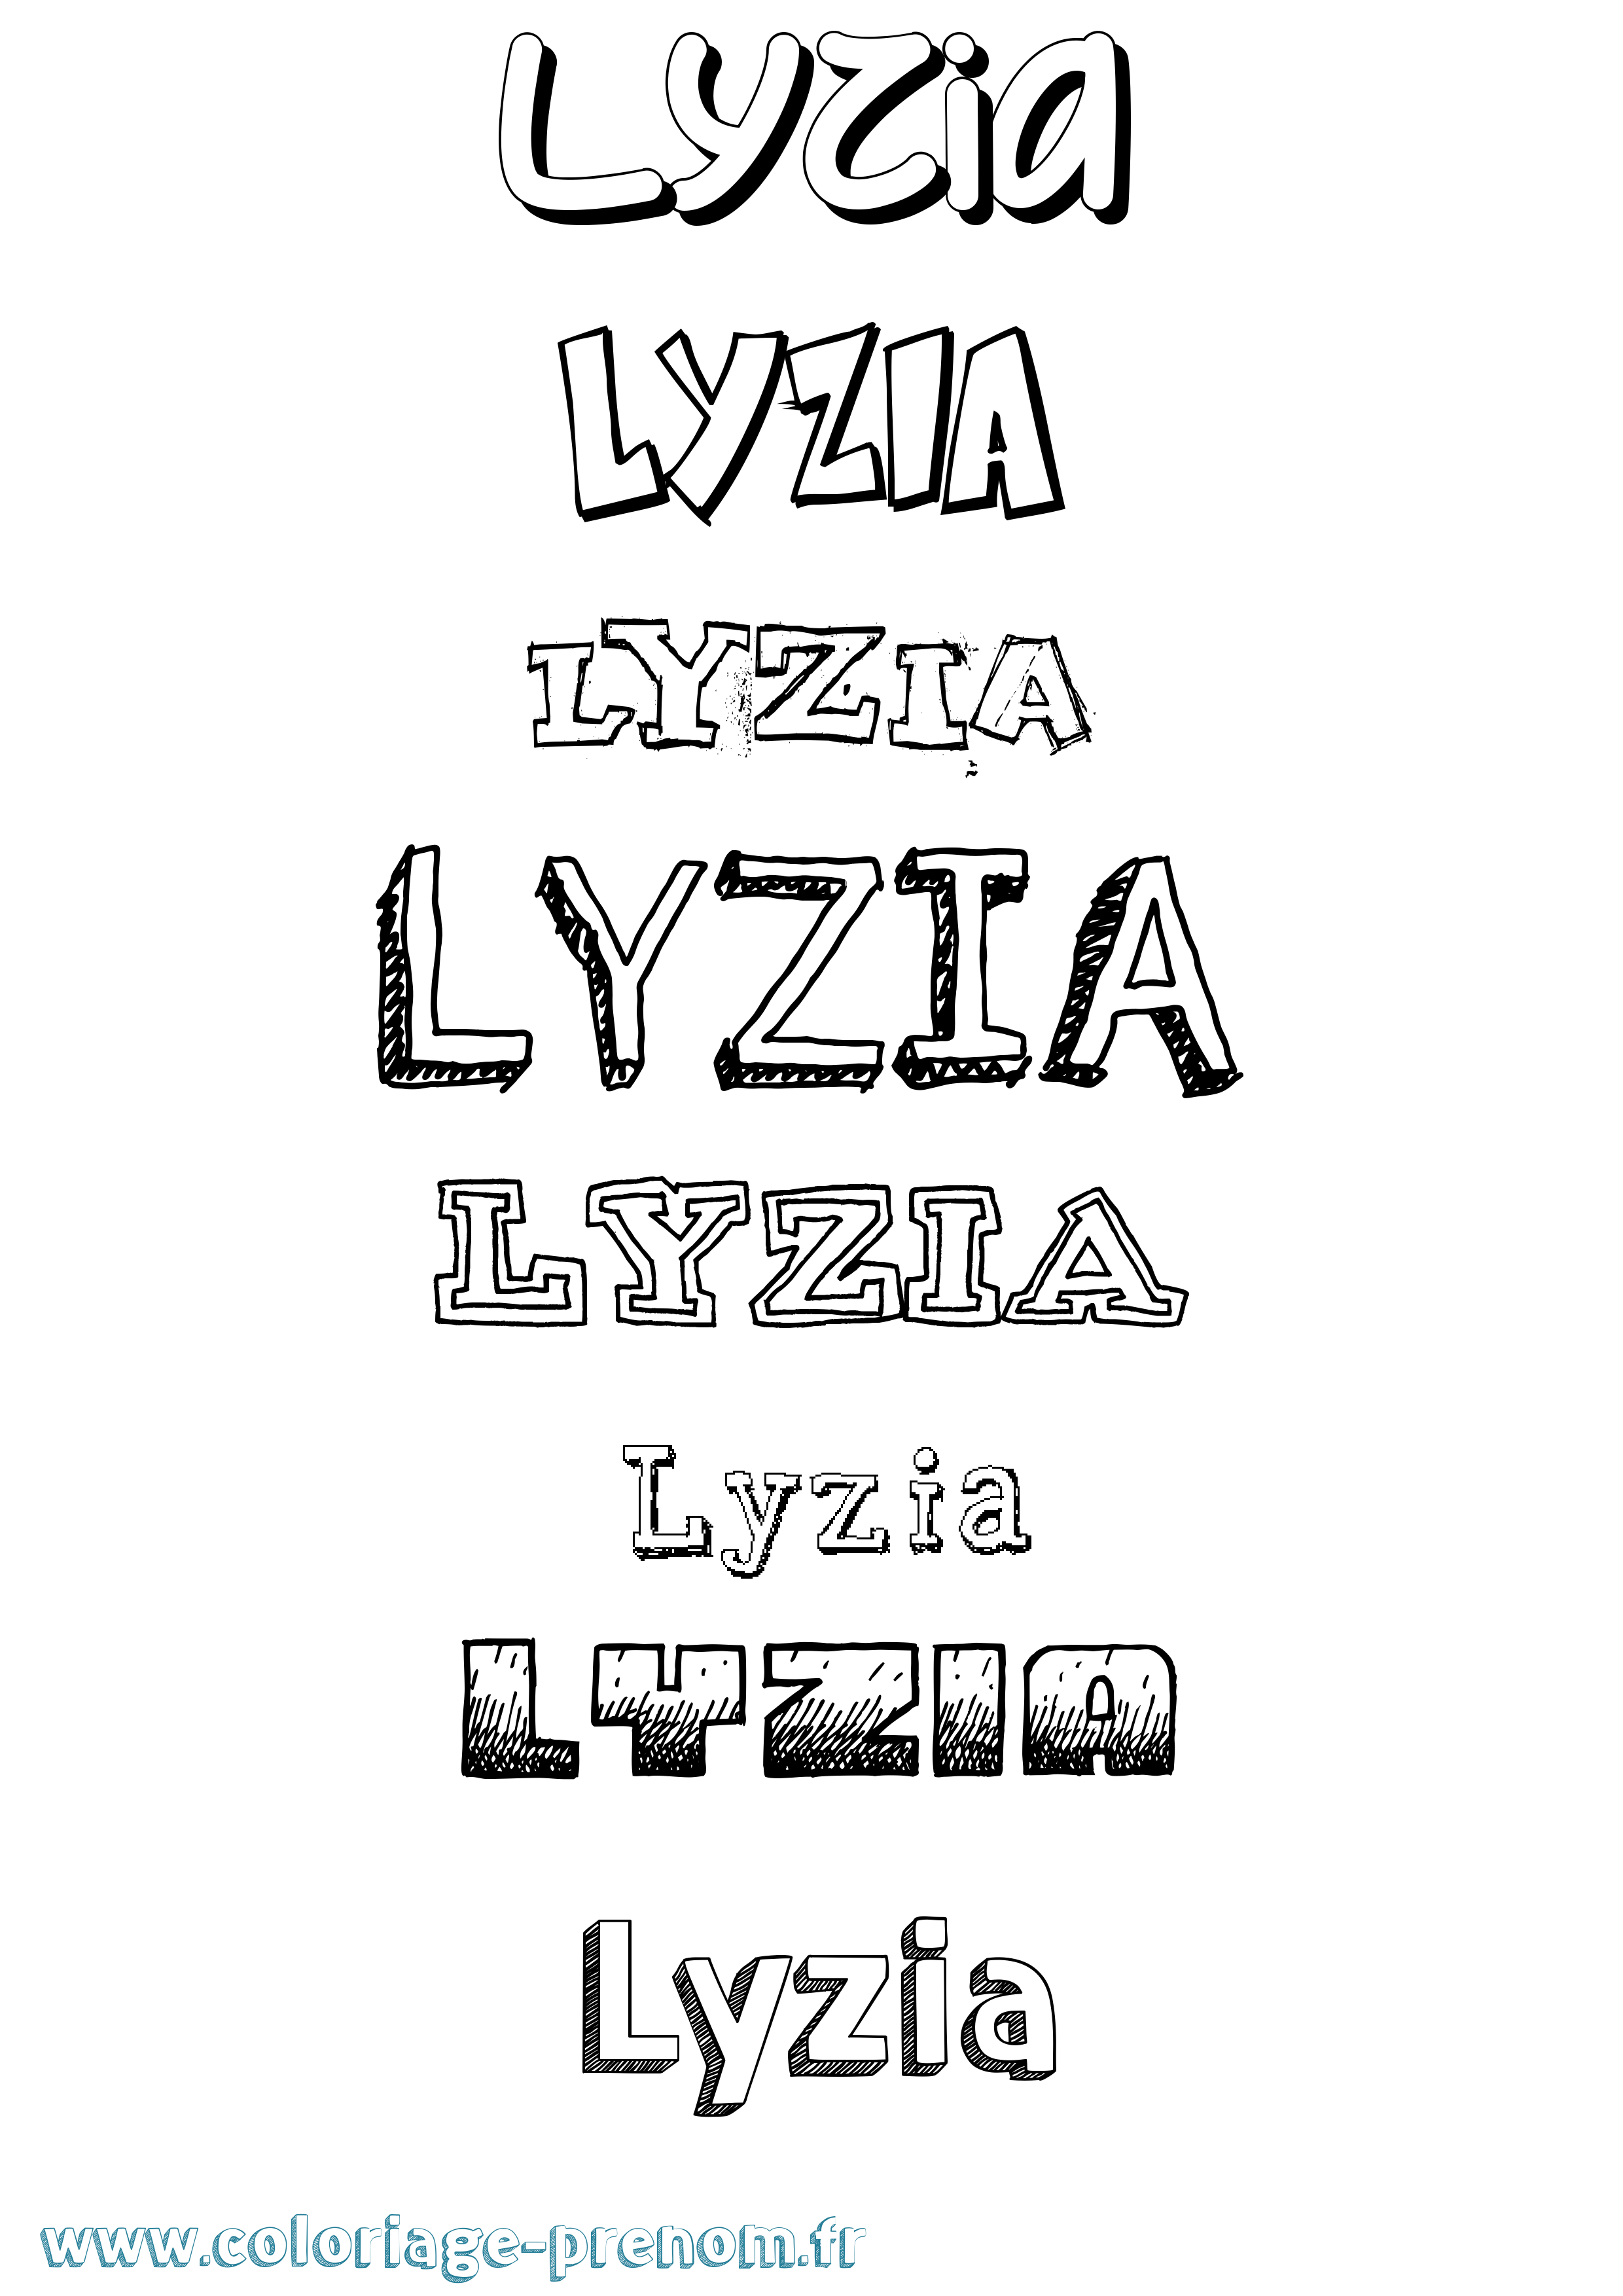 Coloriage prénom Lyzia Dessiné